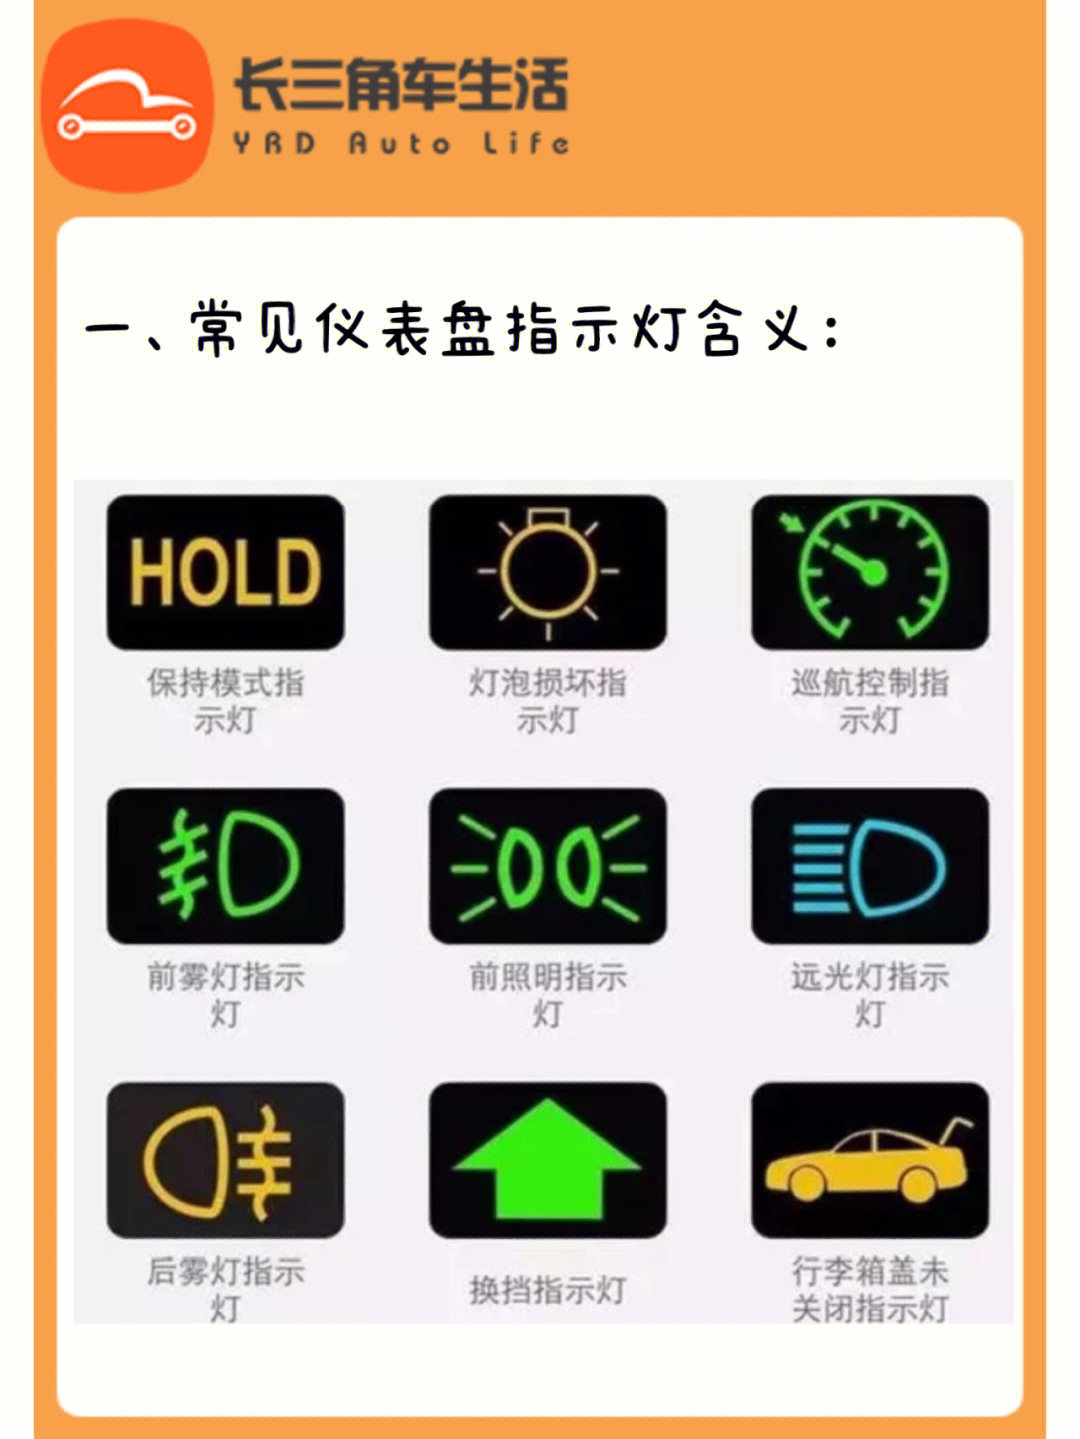 汽车仪表盘指示灯的作用是提示车主,车辆各功能的状况.